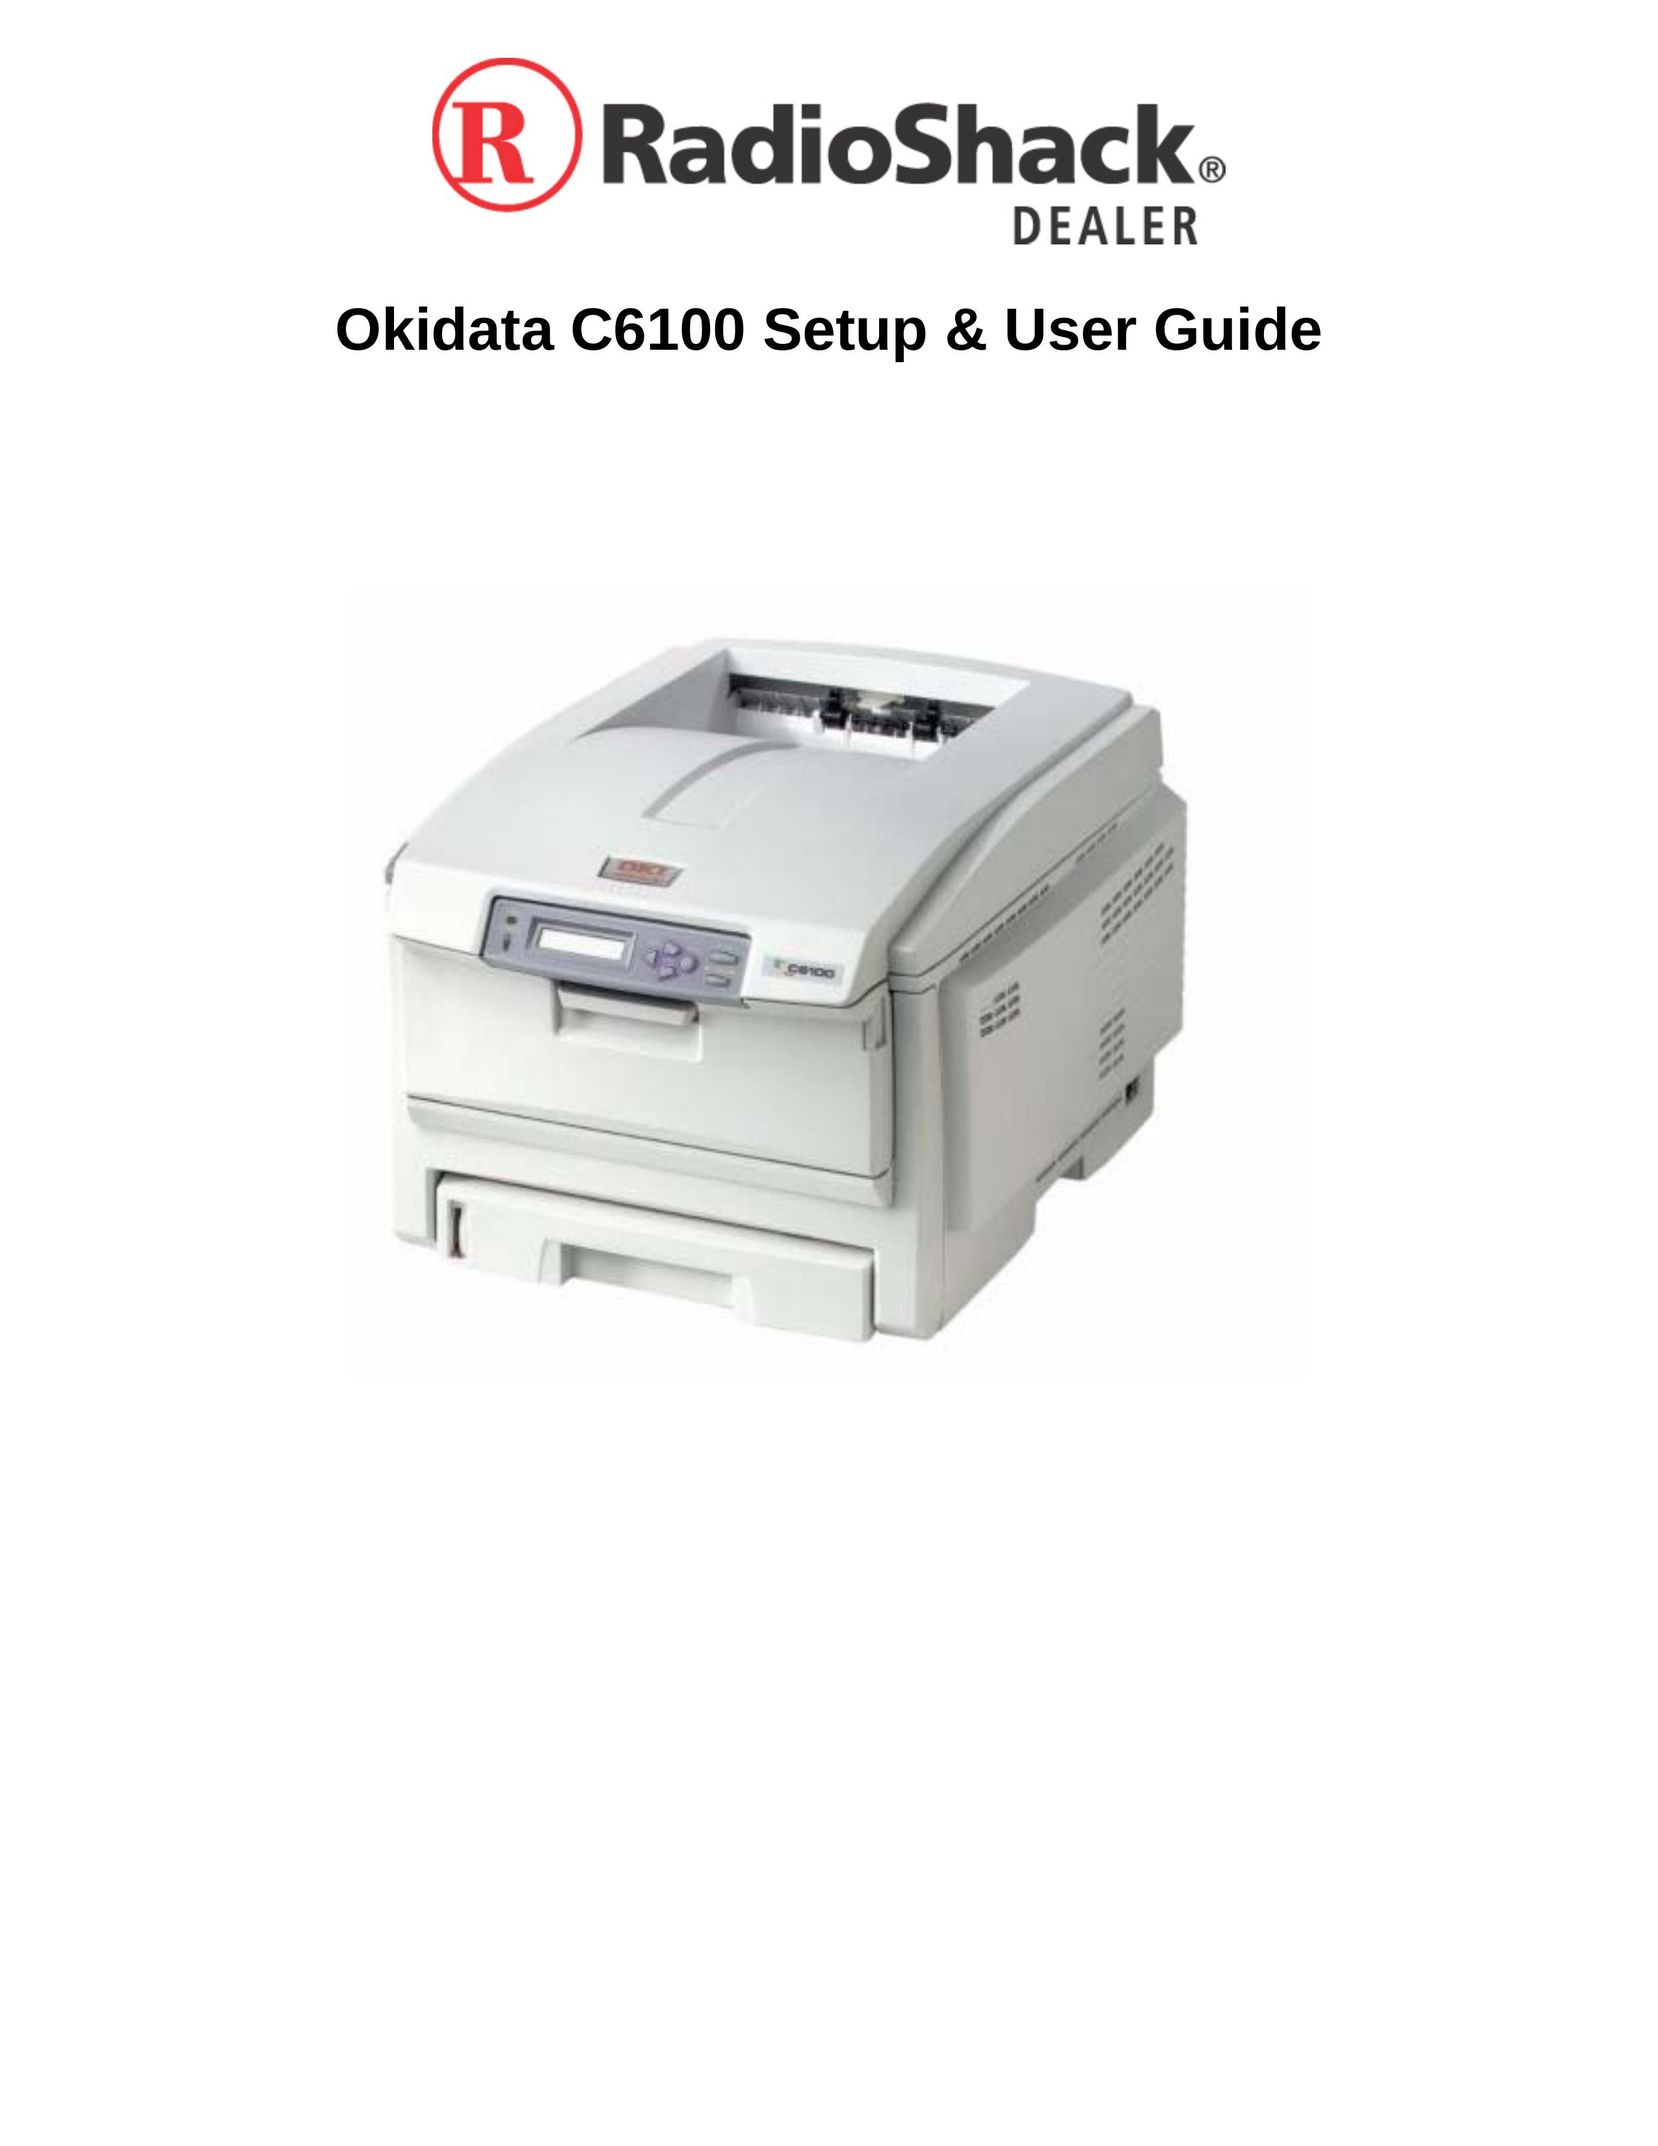 Radio Shack Okidata C6100 Printer User Manual